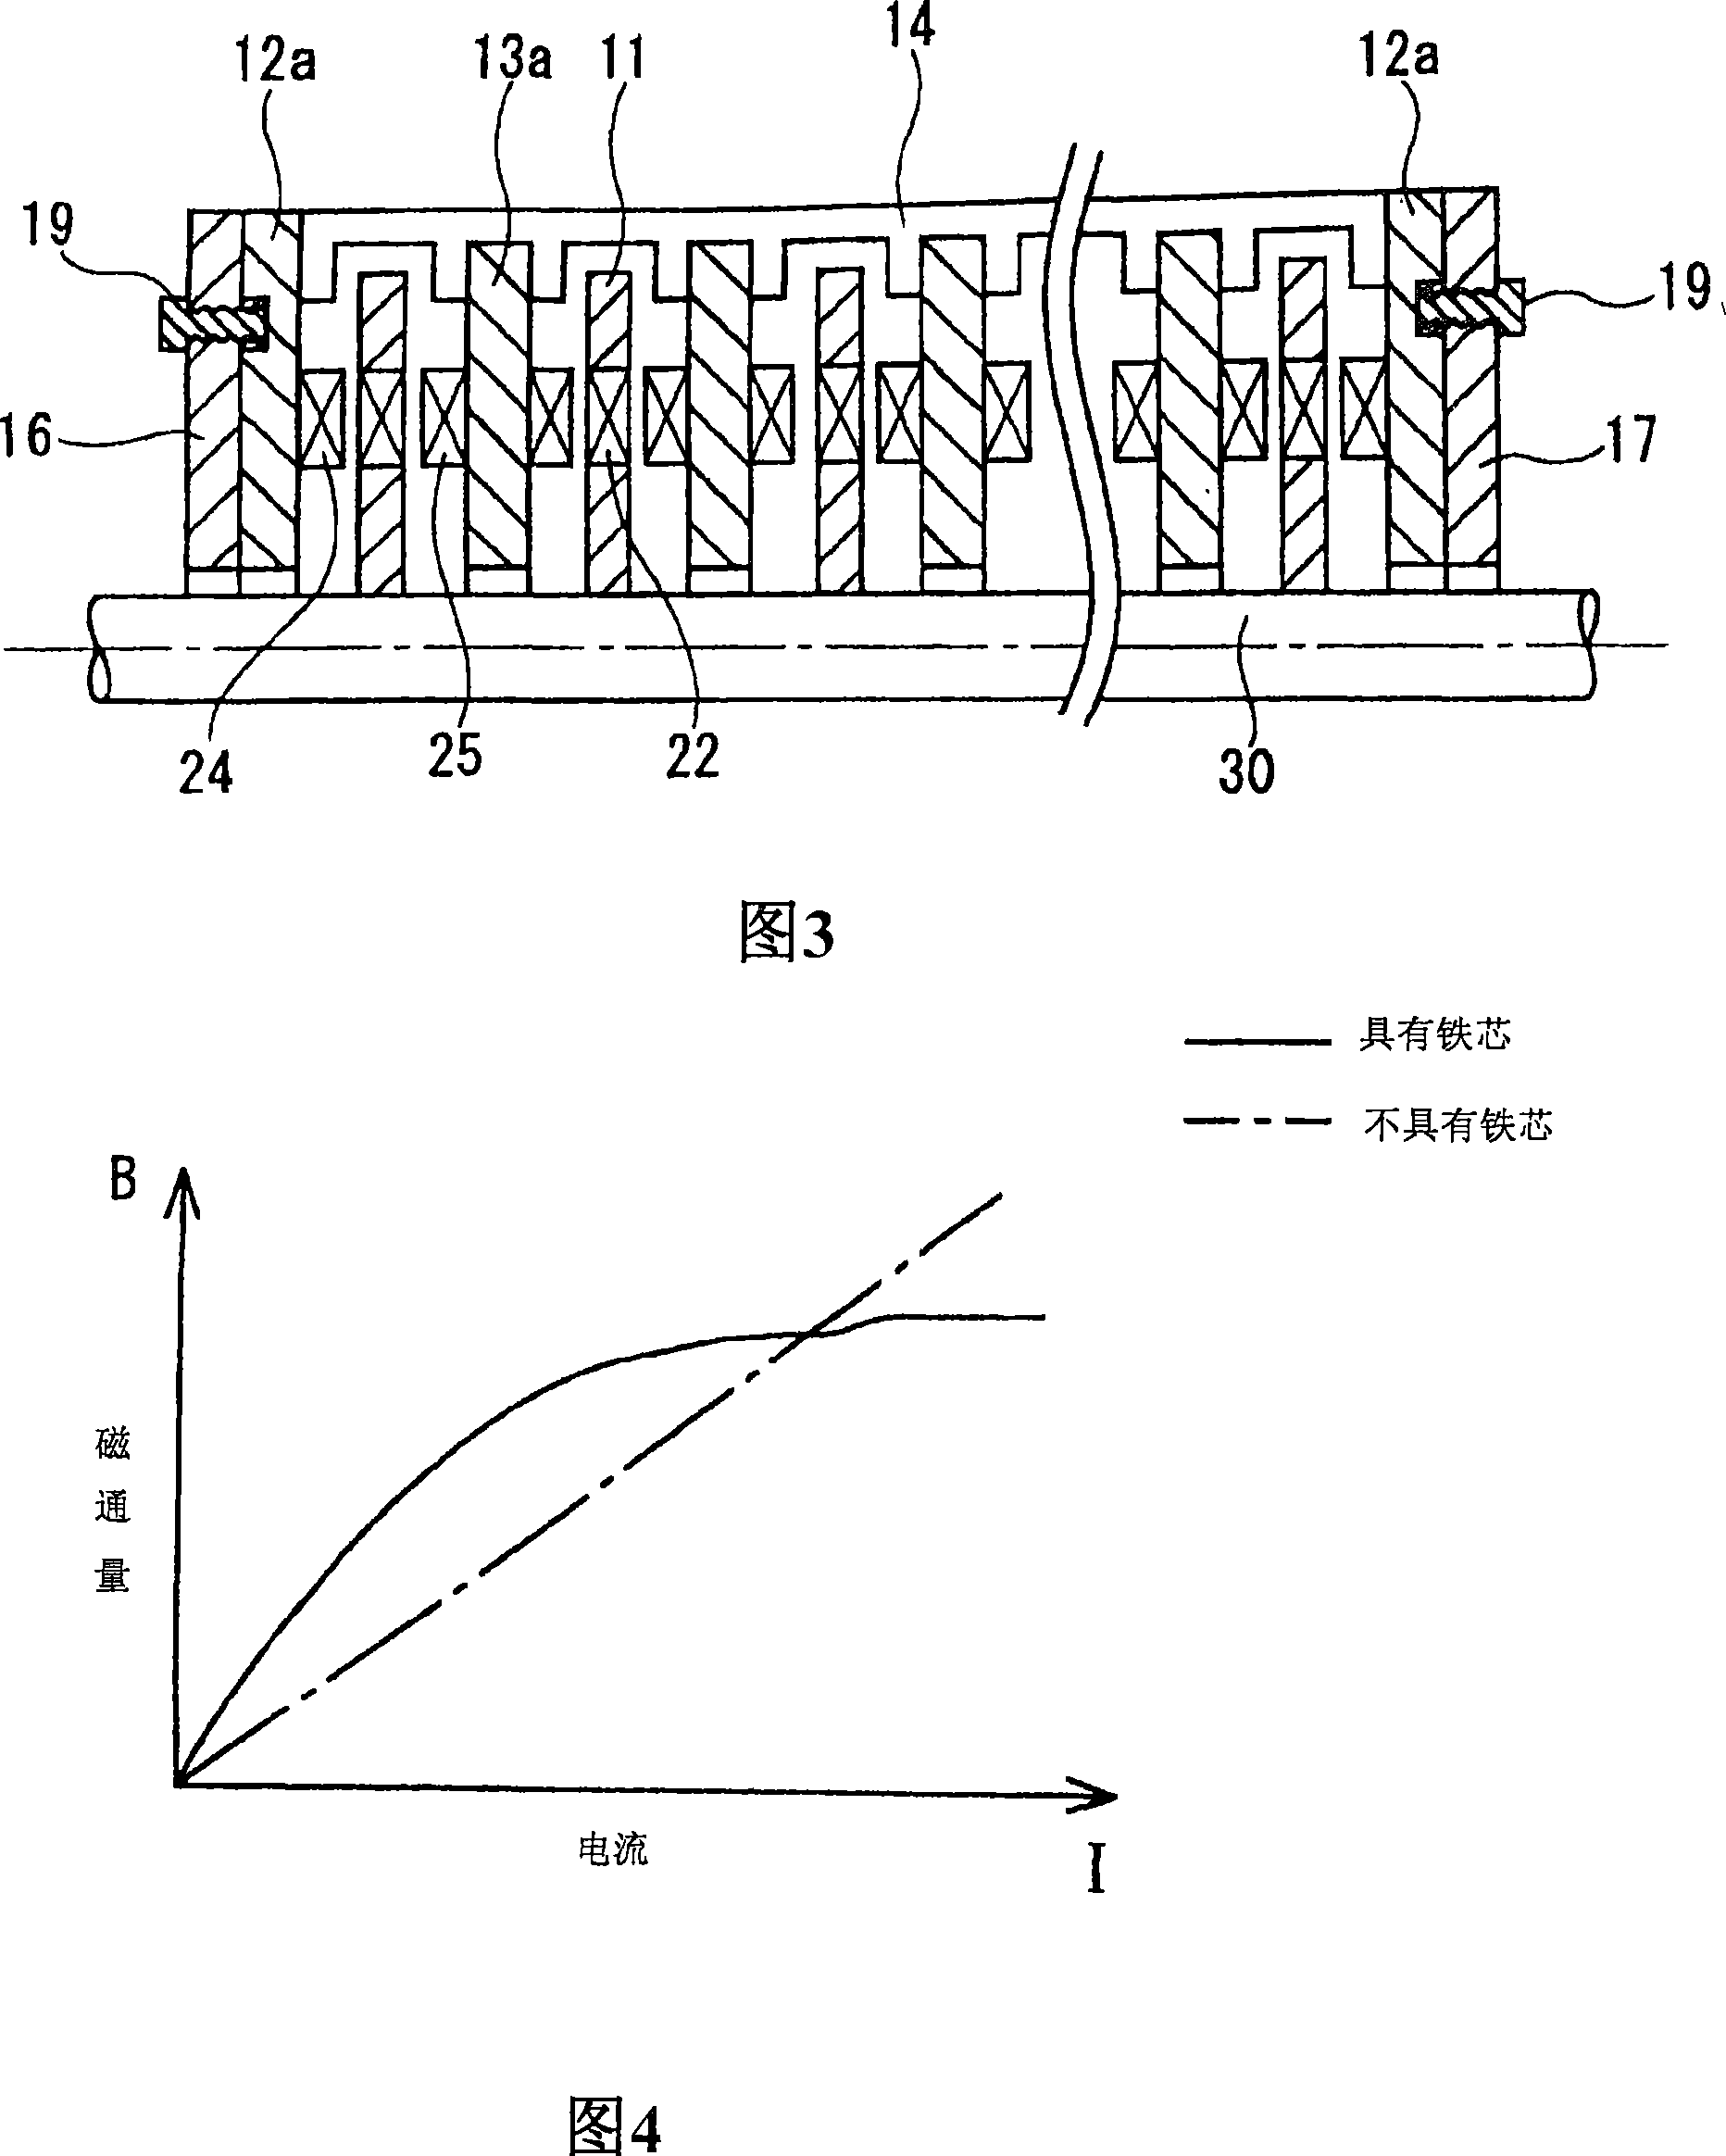 Axial gap motor